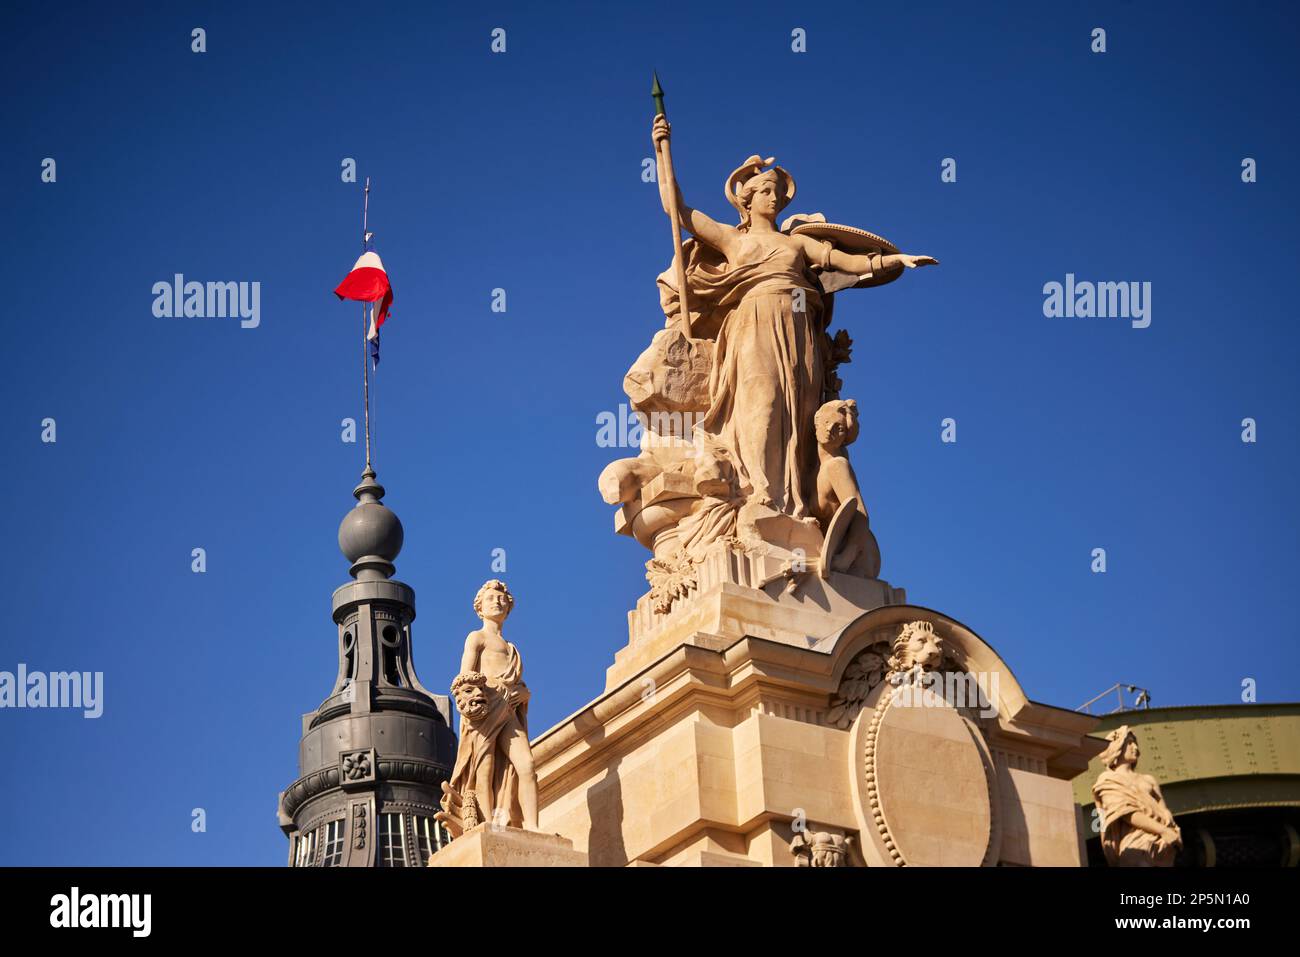 Paris site touristique Grand Palais détail sur le toit monuments célèbres, statue sur le dessus du toit de Palais Grand Banque D'Images